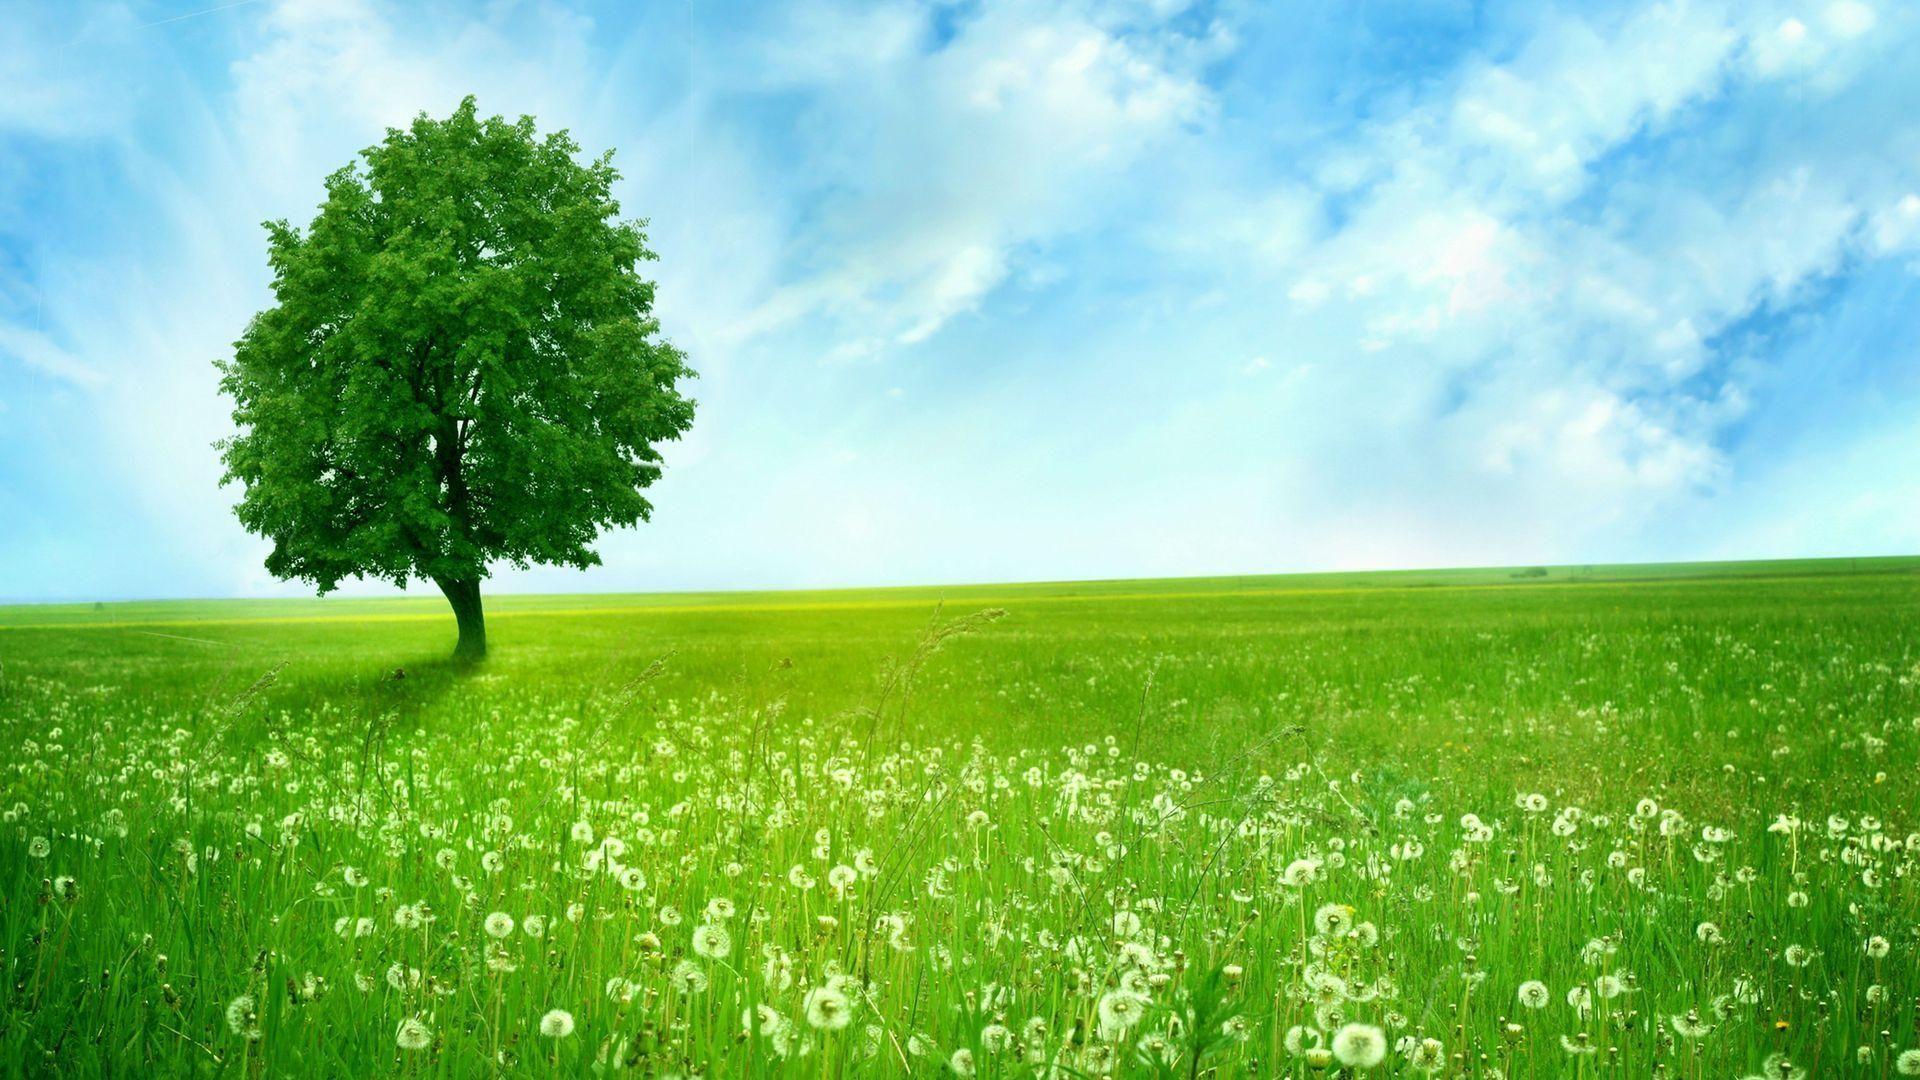 Hình ảnh thiên nhiên màu xanh lá cây đẹp không chỉ làm cho trái tim ta yên bình hơn mà còn giúp ta cảm thấy gần gũi với thiên nhiên hơn bao giờ hết. Hãy cùng nhìn vào những hình ảnh thần thái này và thư giãn đầu óc sau một ngày làm việc vất vả.